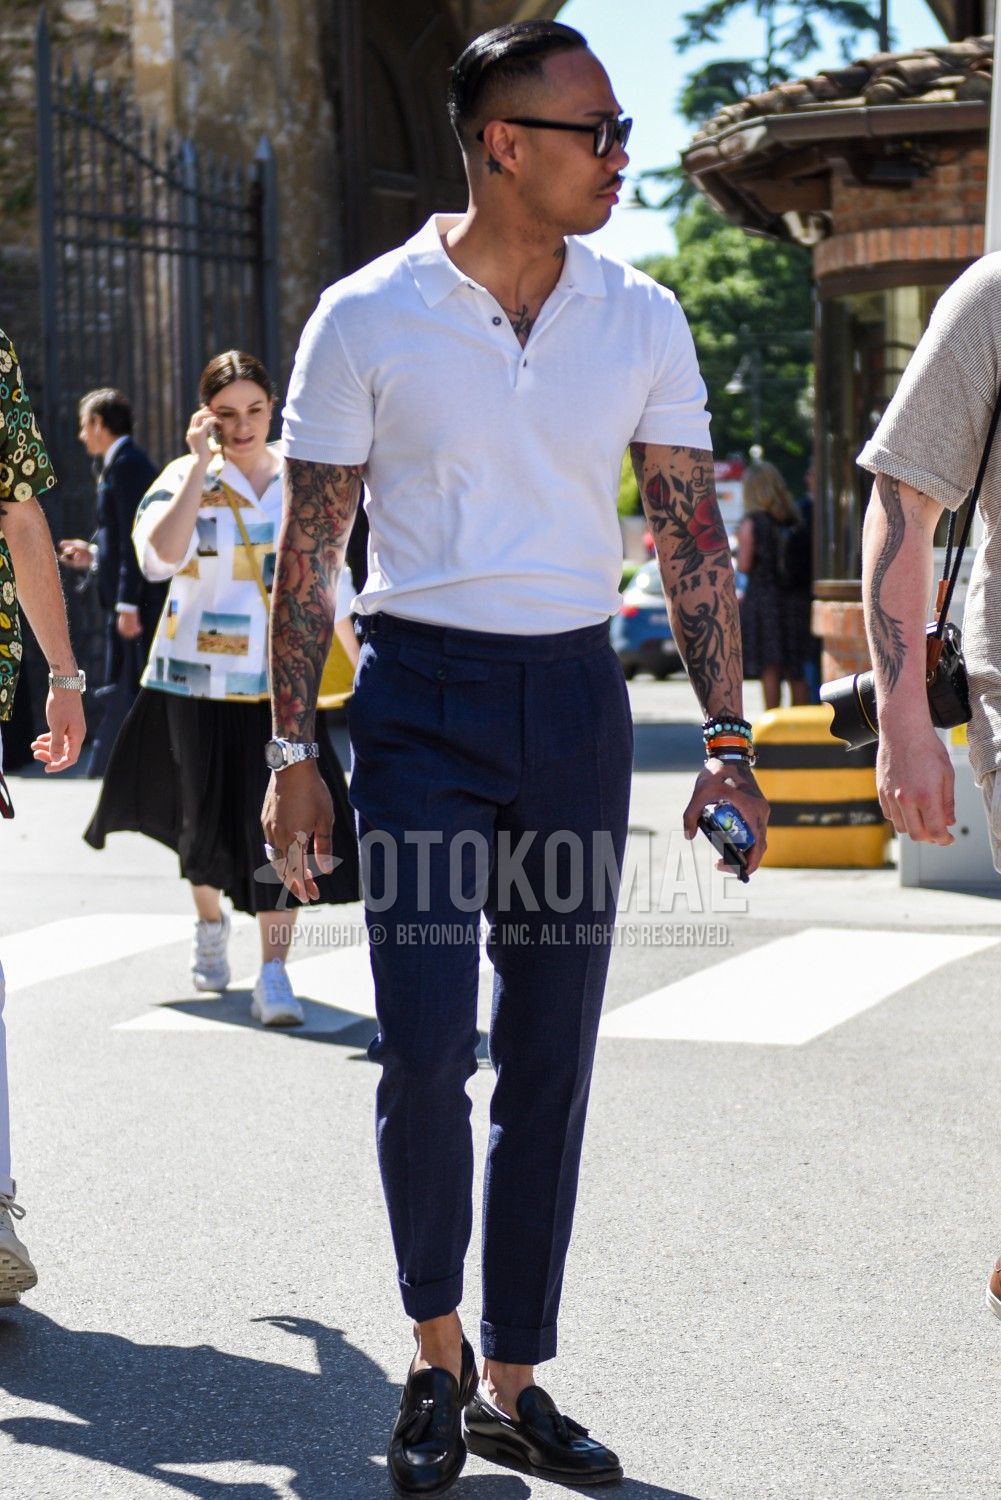 スラックス 夏コーデ メンズ特集 端正なシルエットで印象を整えた男の着こなし アイテムを紹介 メンズファッションメディア Otokomaeotokomae 男前研究所